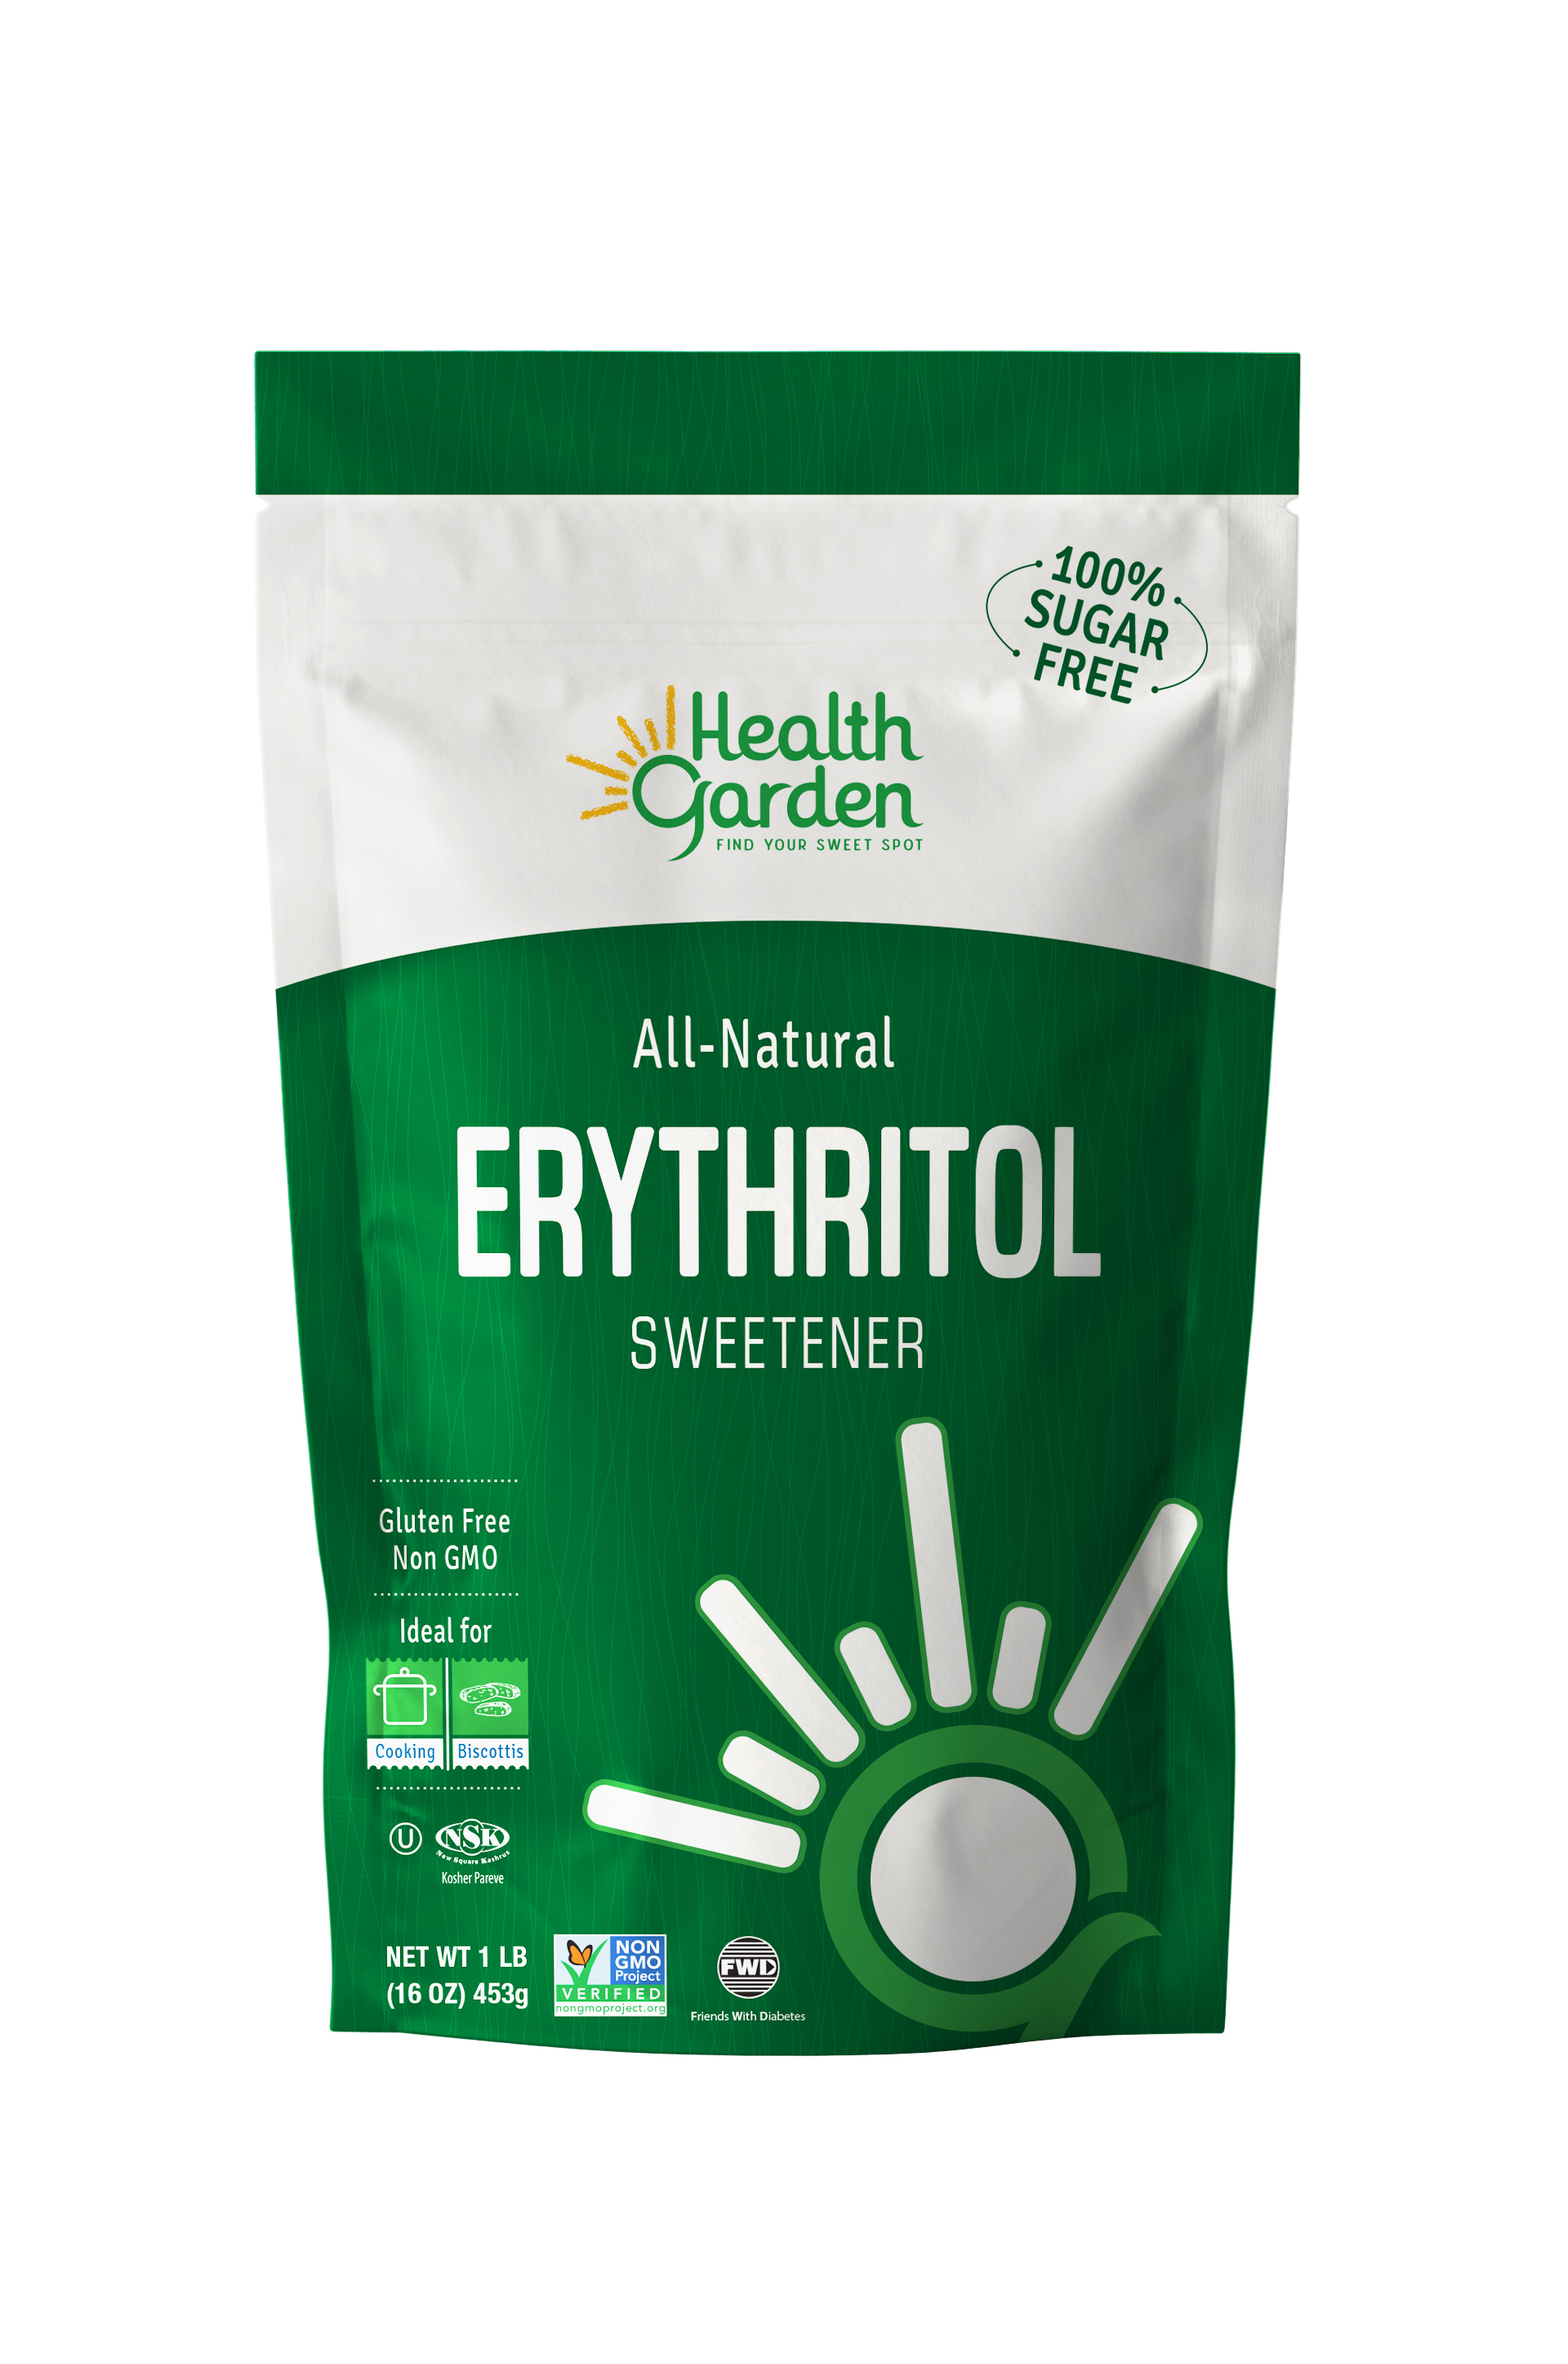 Health Garden Erythritol 12 units per case 1.0 lb